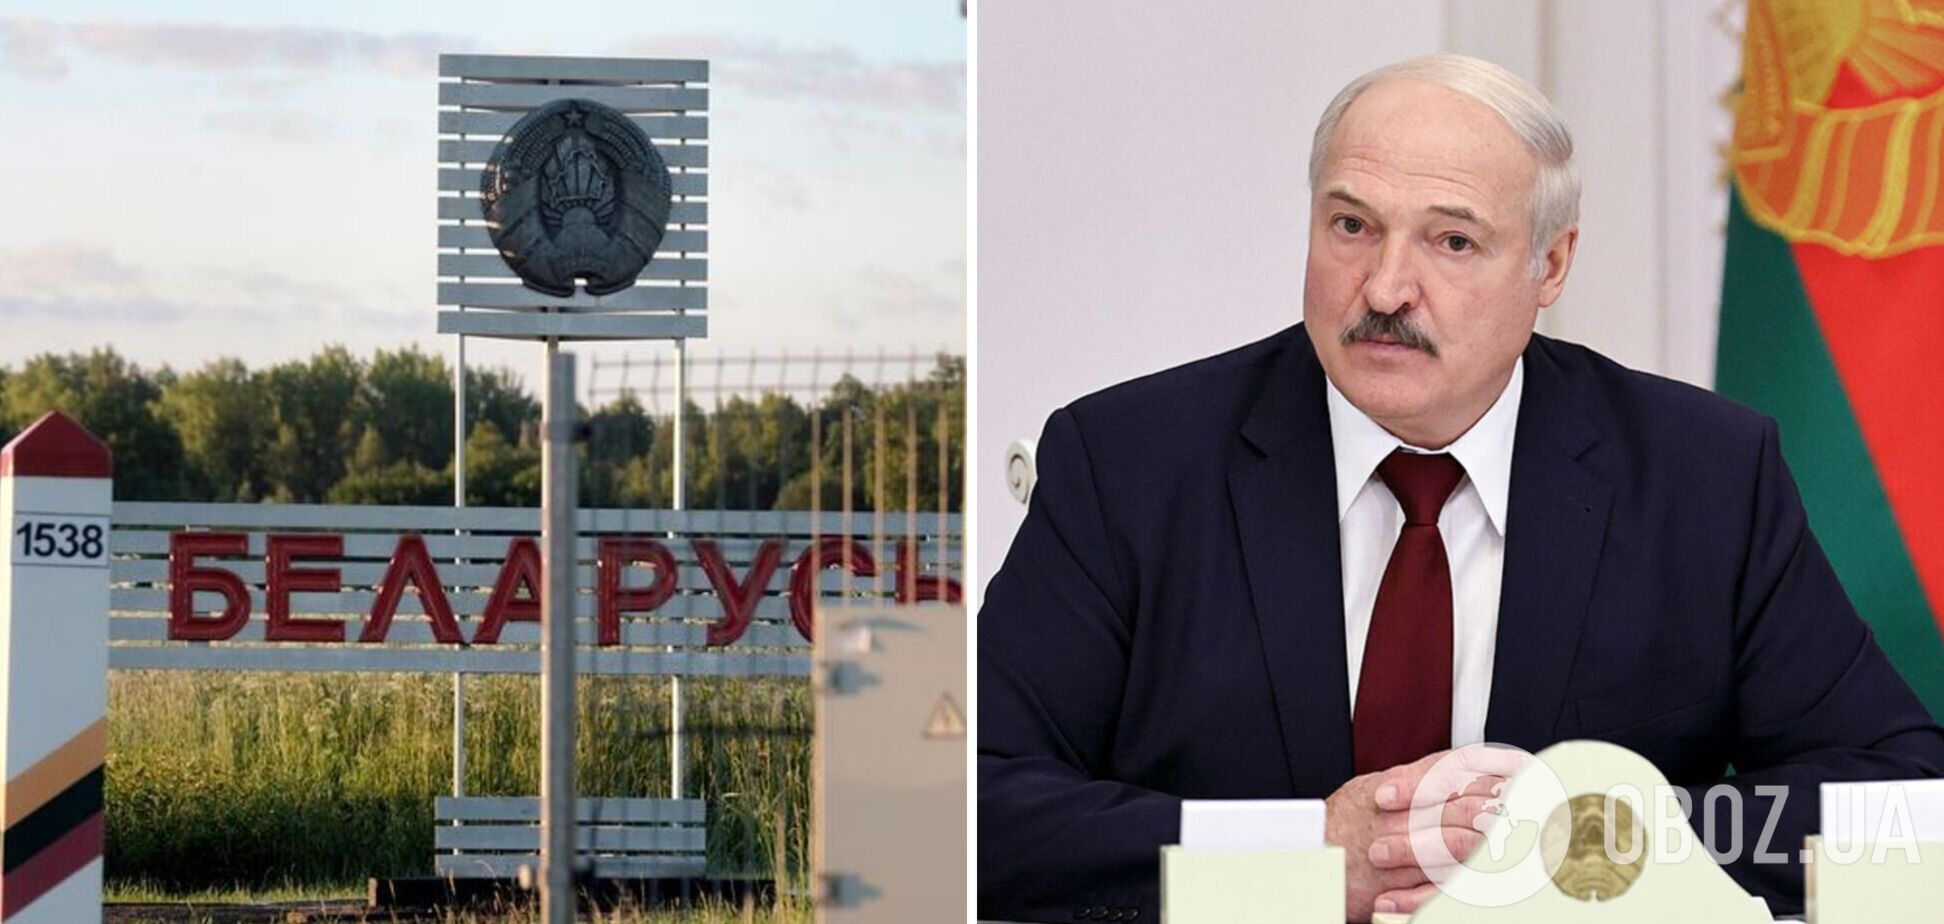 В Беларуси высшим чиновникам запретили выезд за границу без разрешения Лукашенко